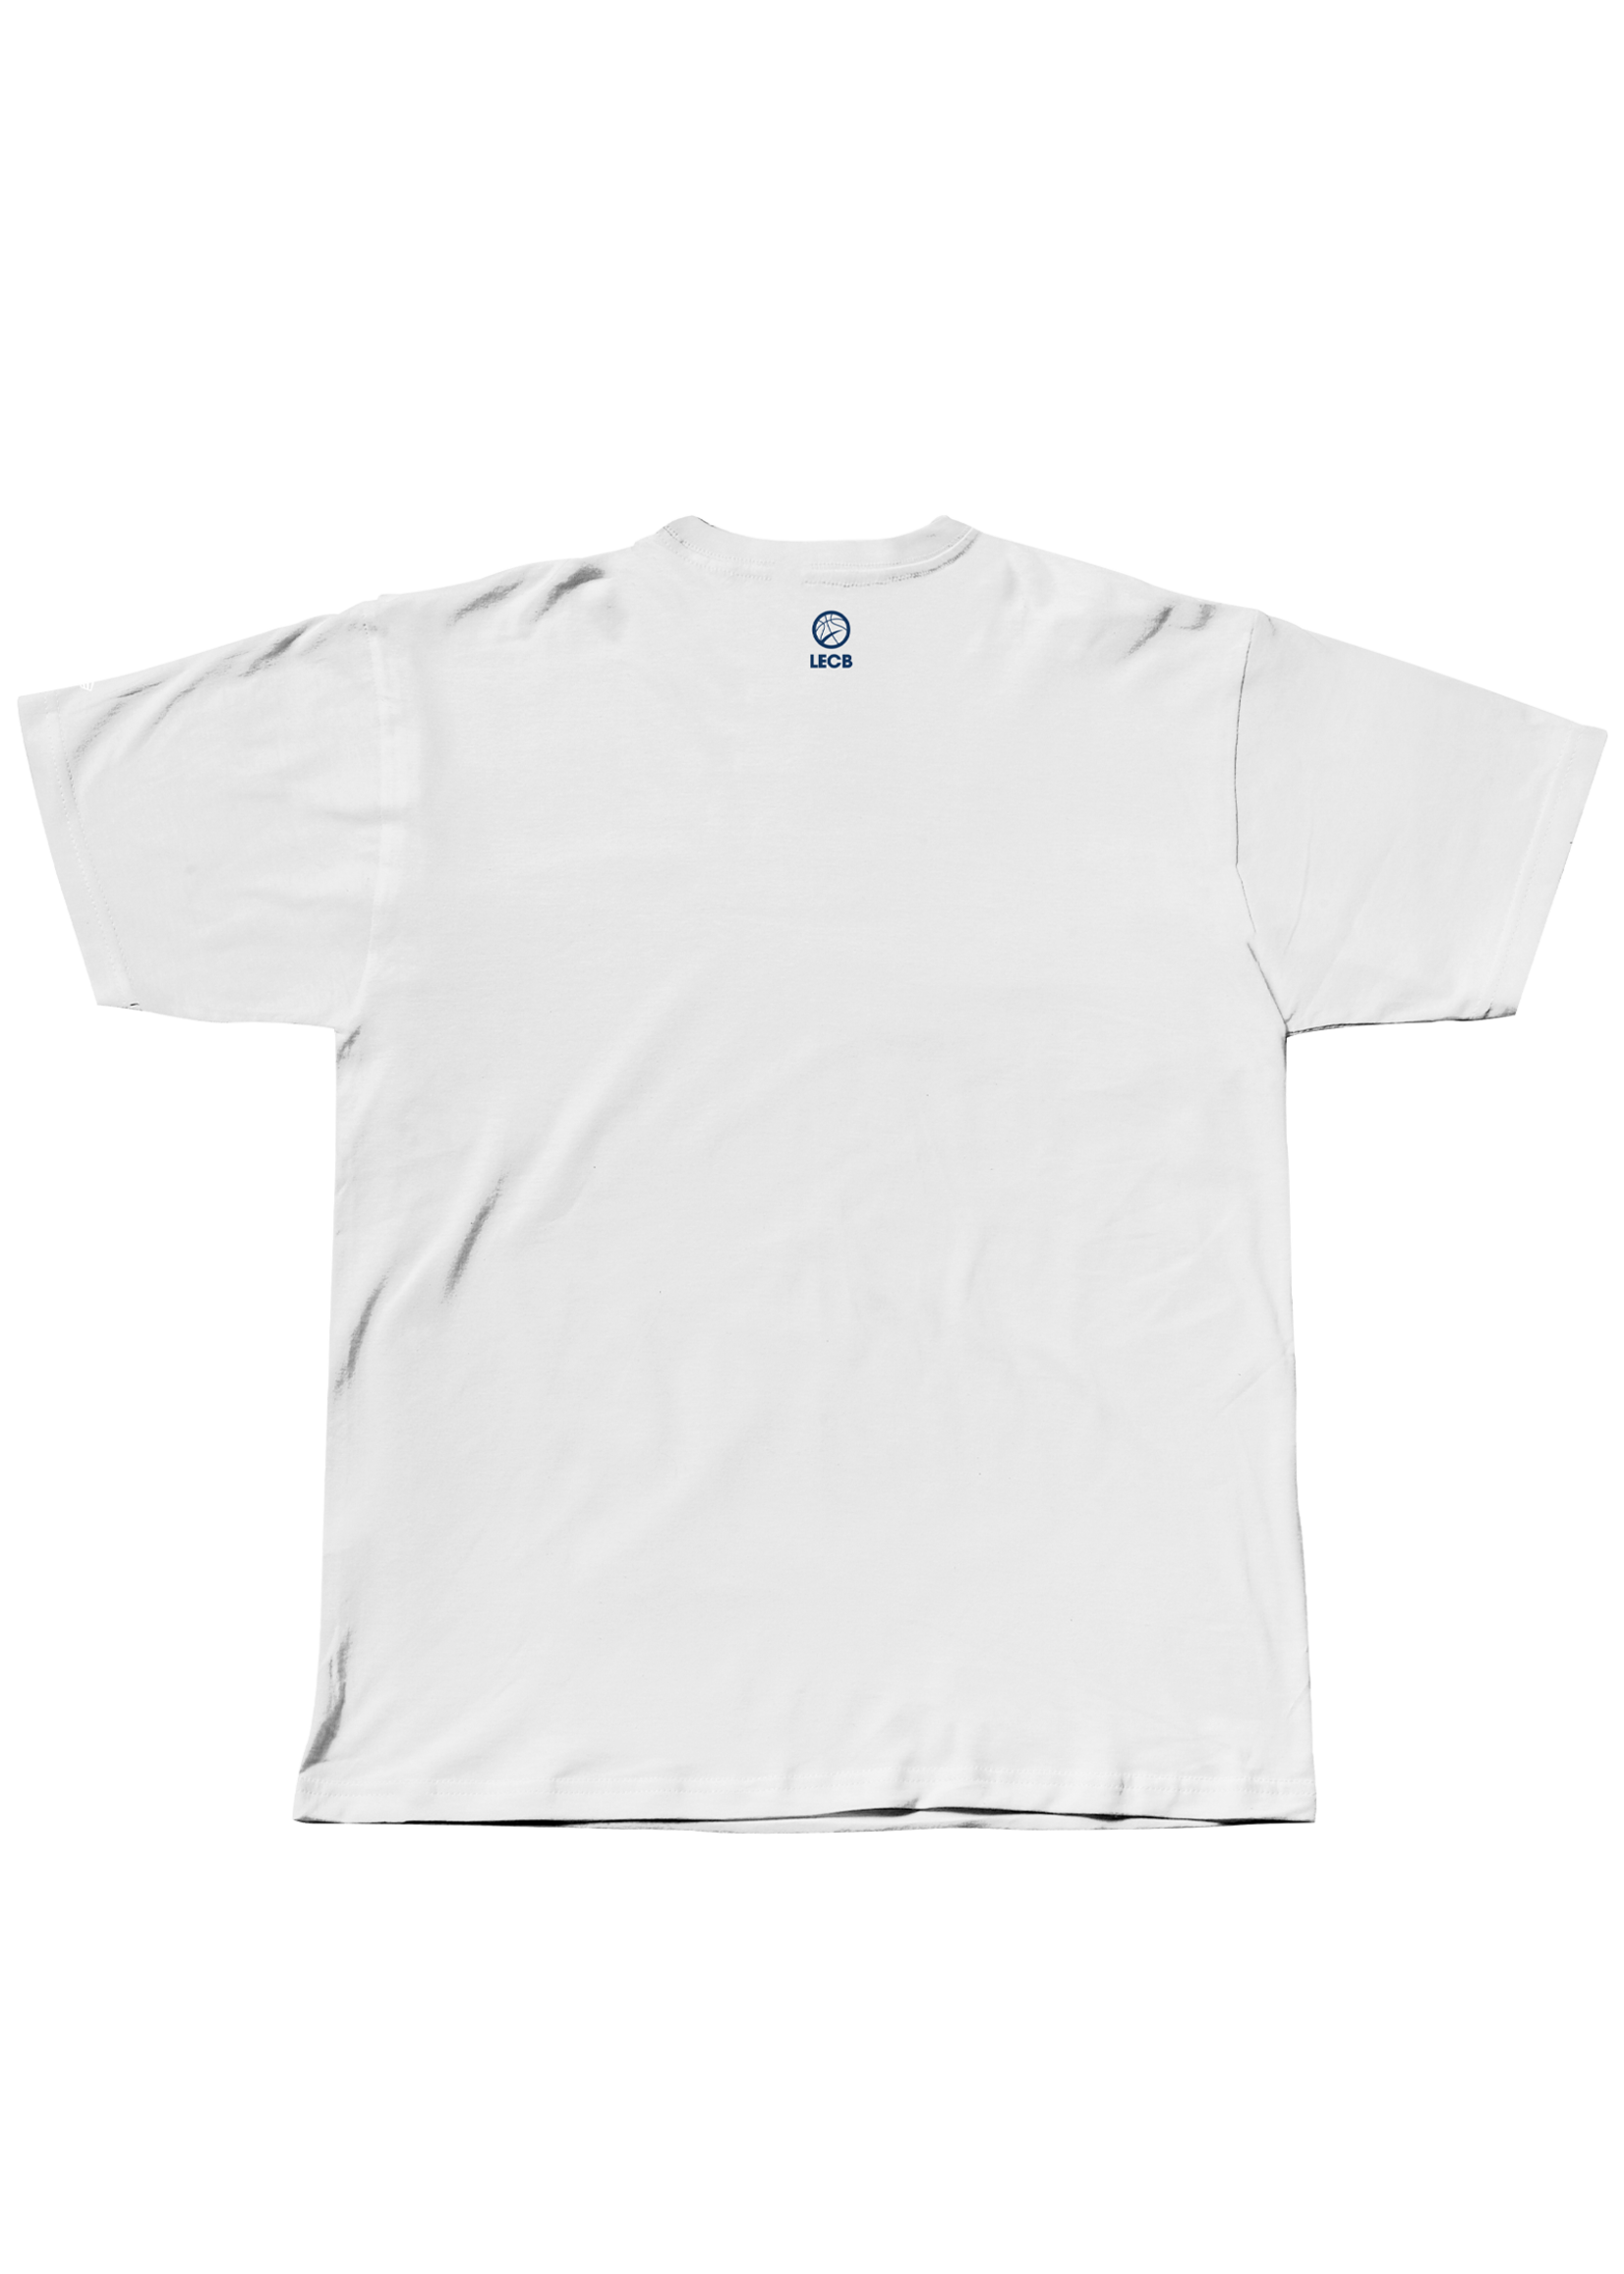 T-shirt Bagel de l'Alliance de Montréal pour enfants - Blanc